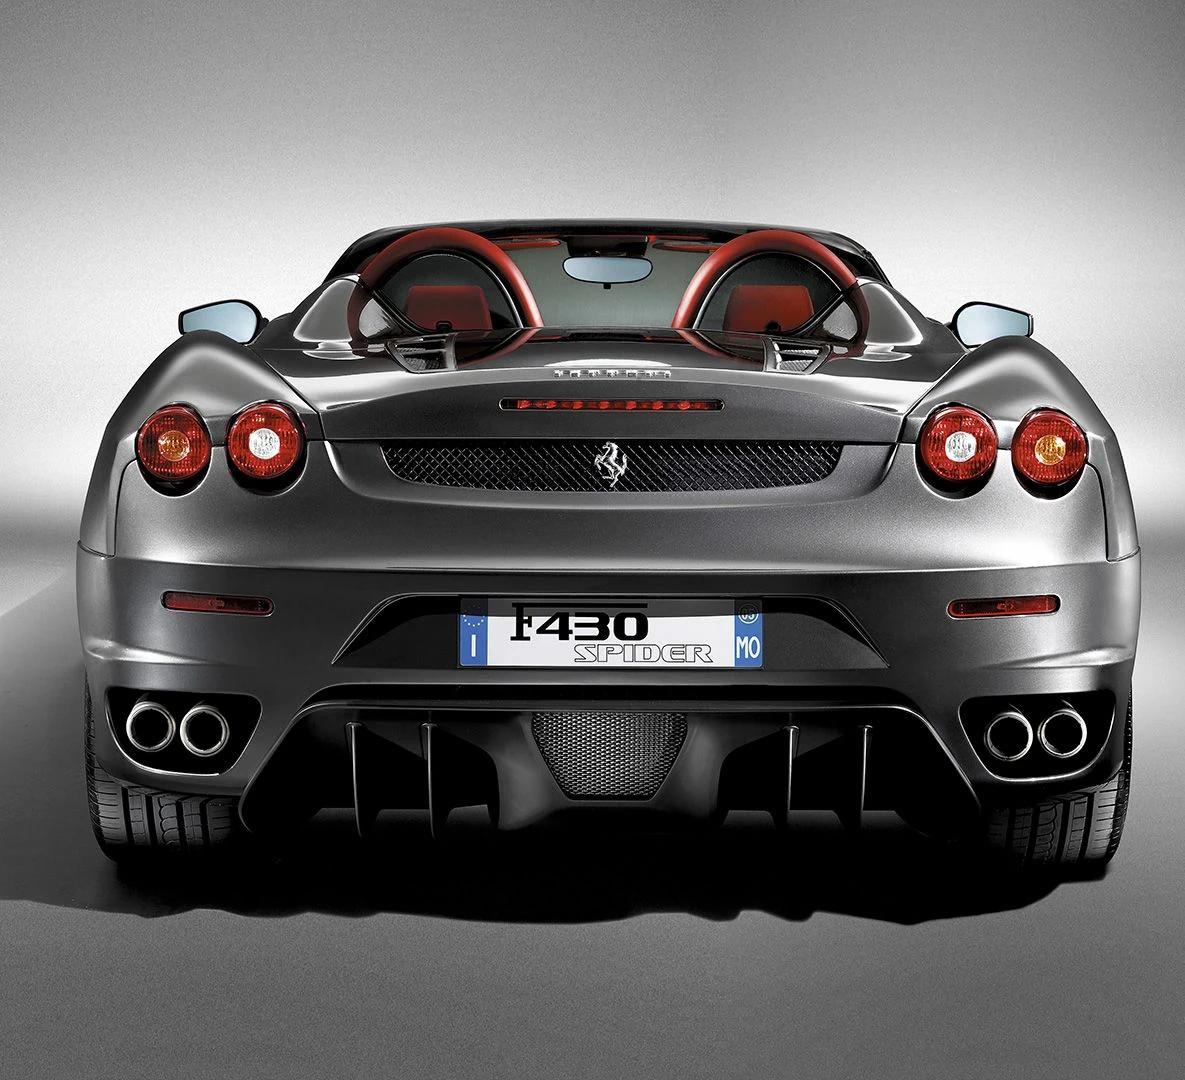 ferrari f430 spider - Cuánto cuesta un Ferrari F430 Spider